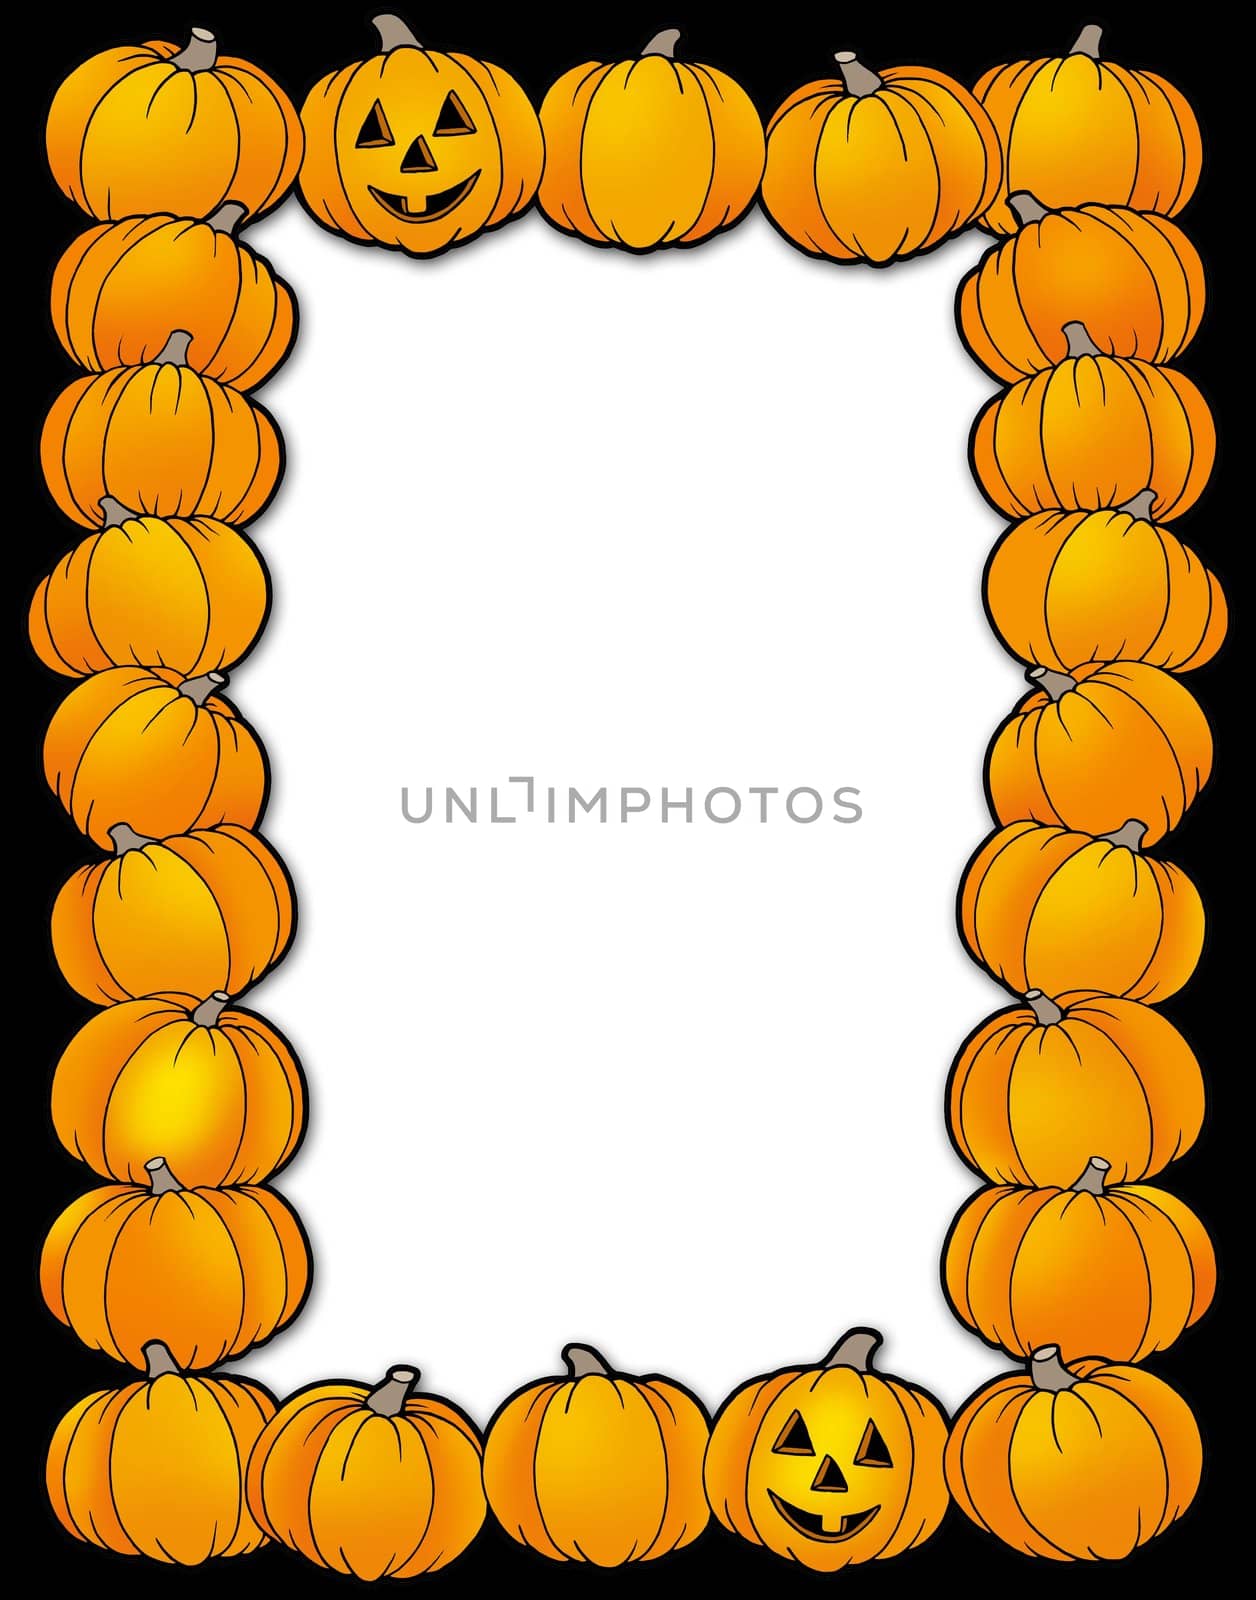 Halloween frame with pumpkins - color illustration.